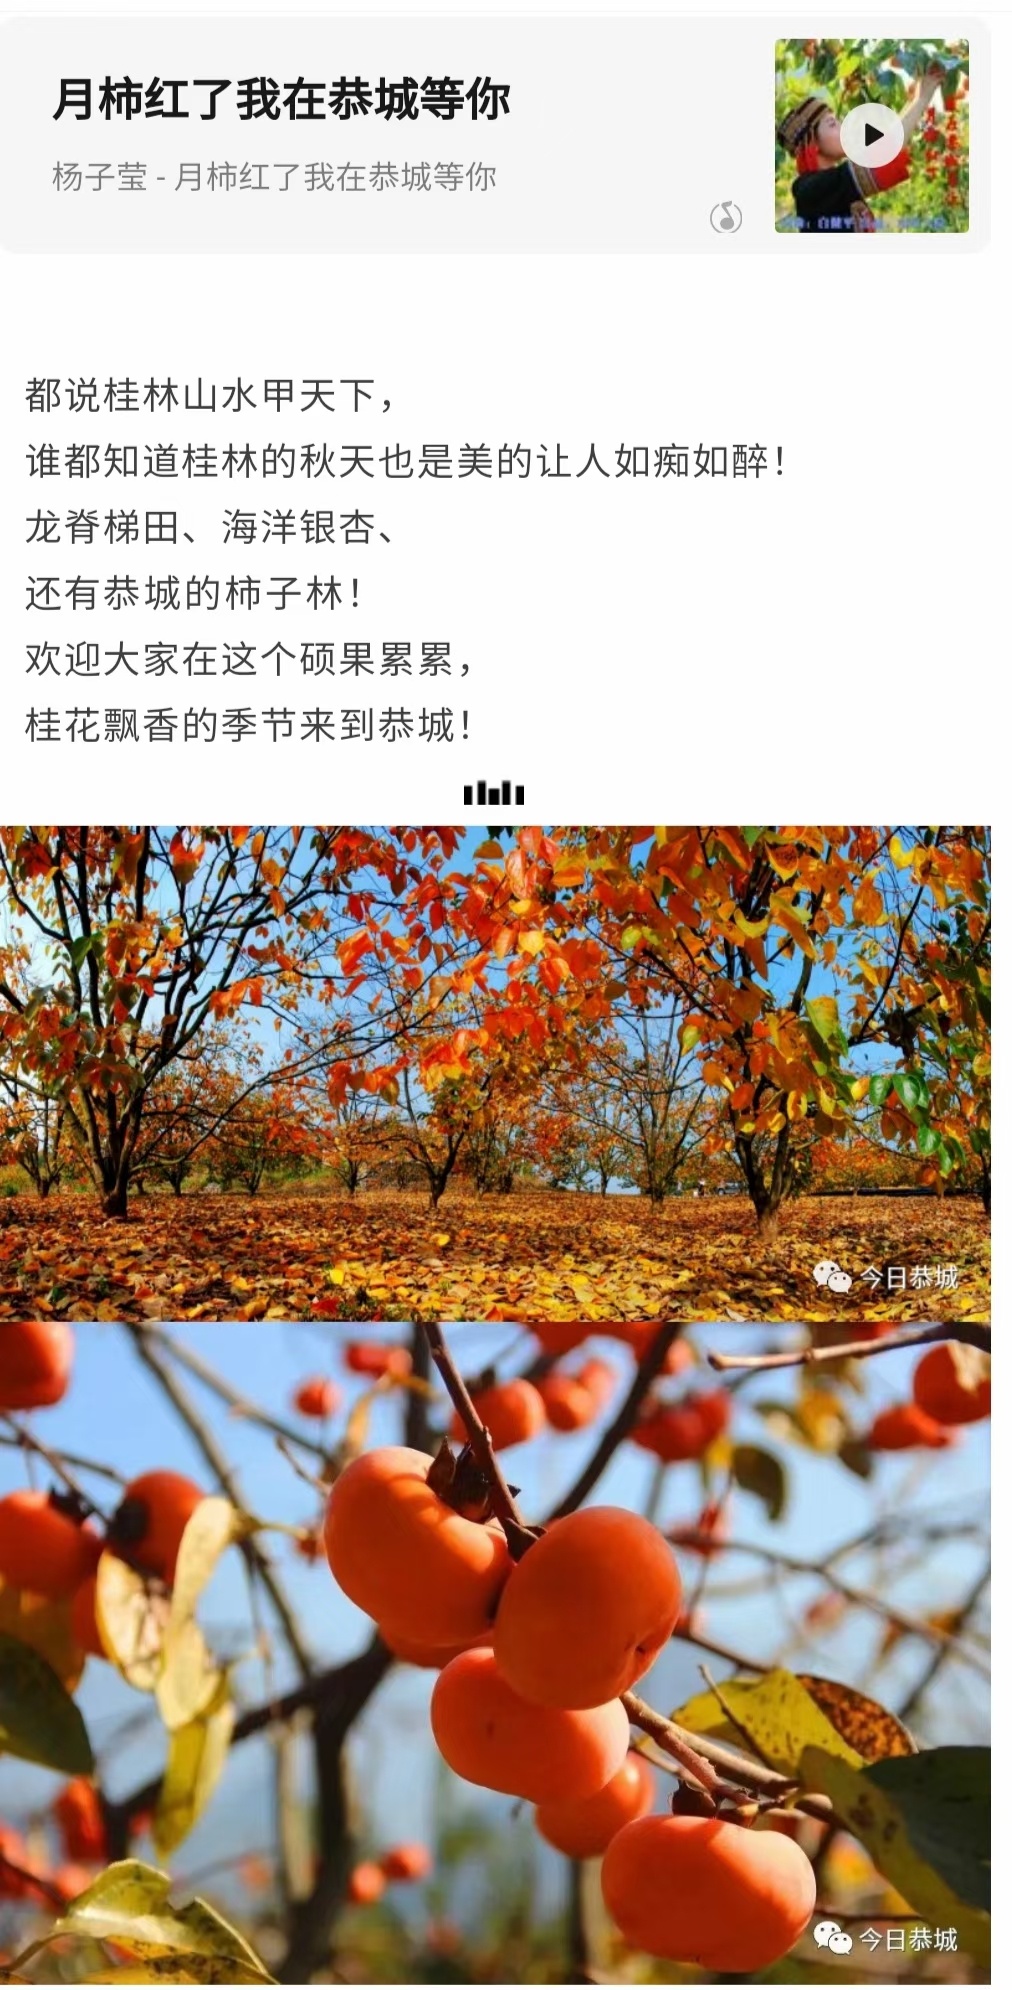 家乡的柿子红了862 / 作者:陈宏福 / 帖子ID:300201